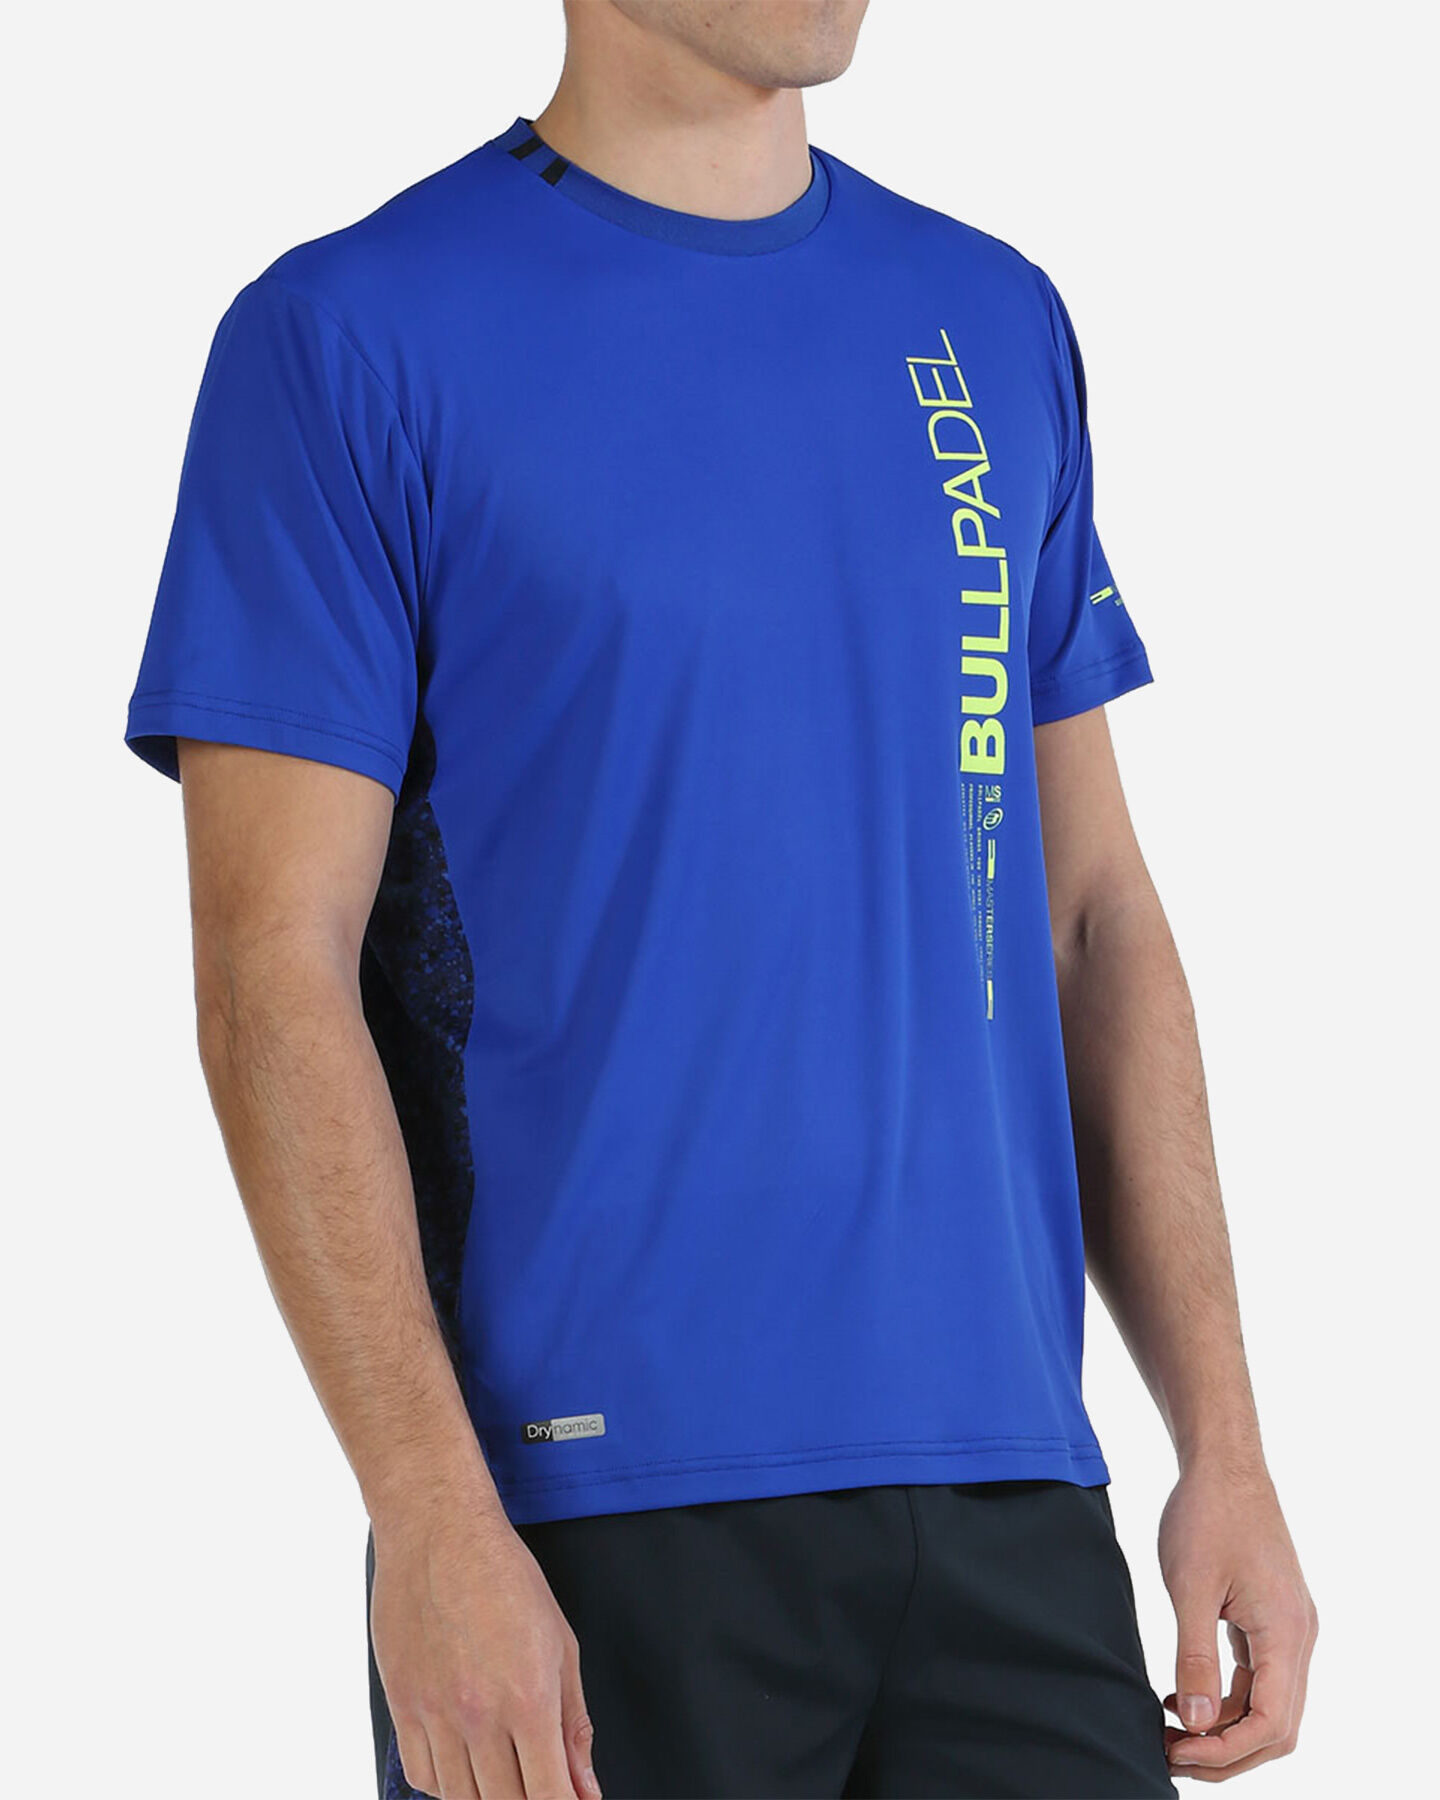  T-Shirt tennis BULLPADEL MIXTA M S5497726 scatto 1